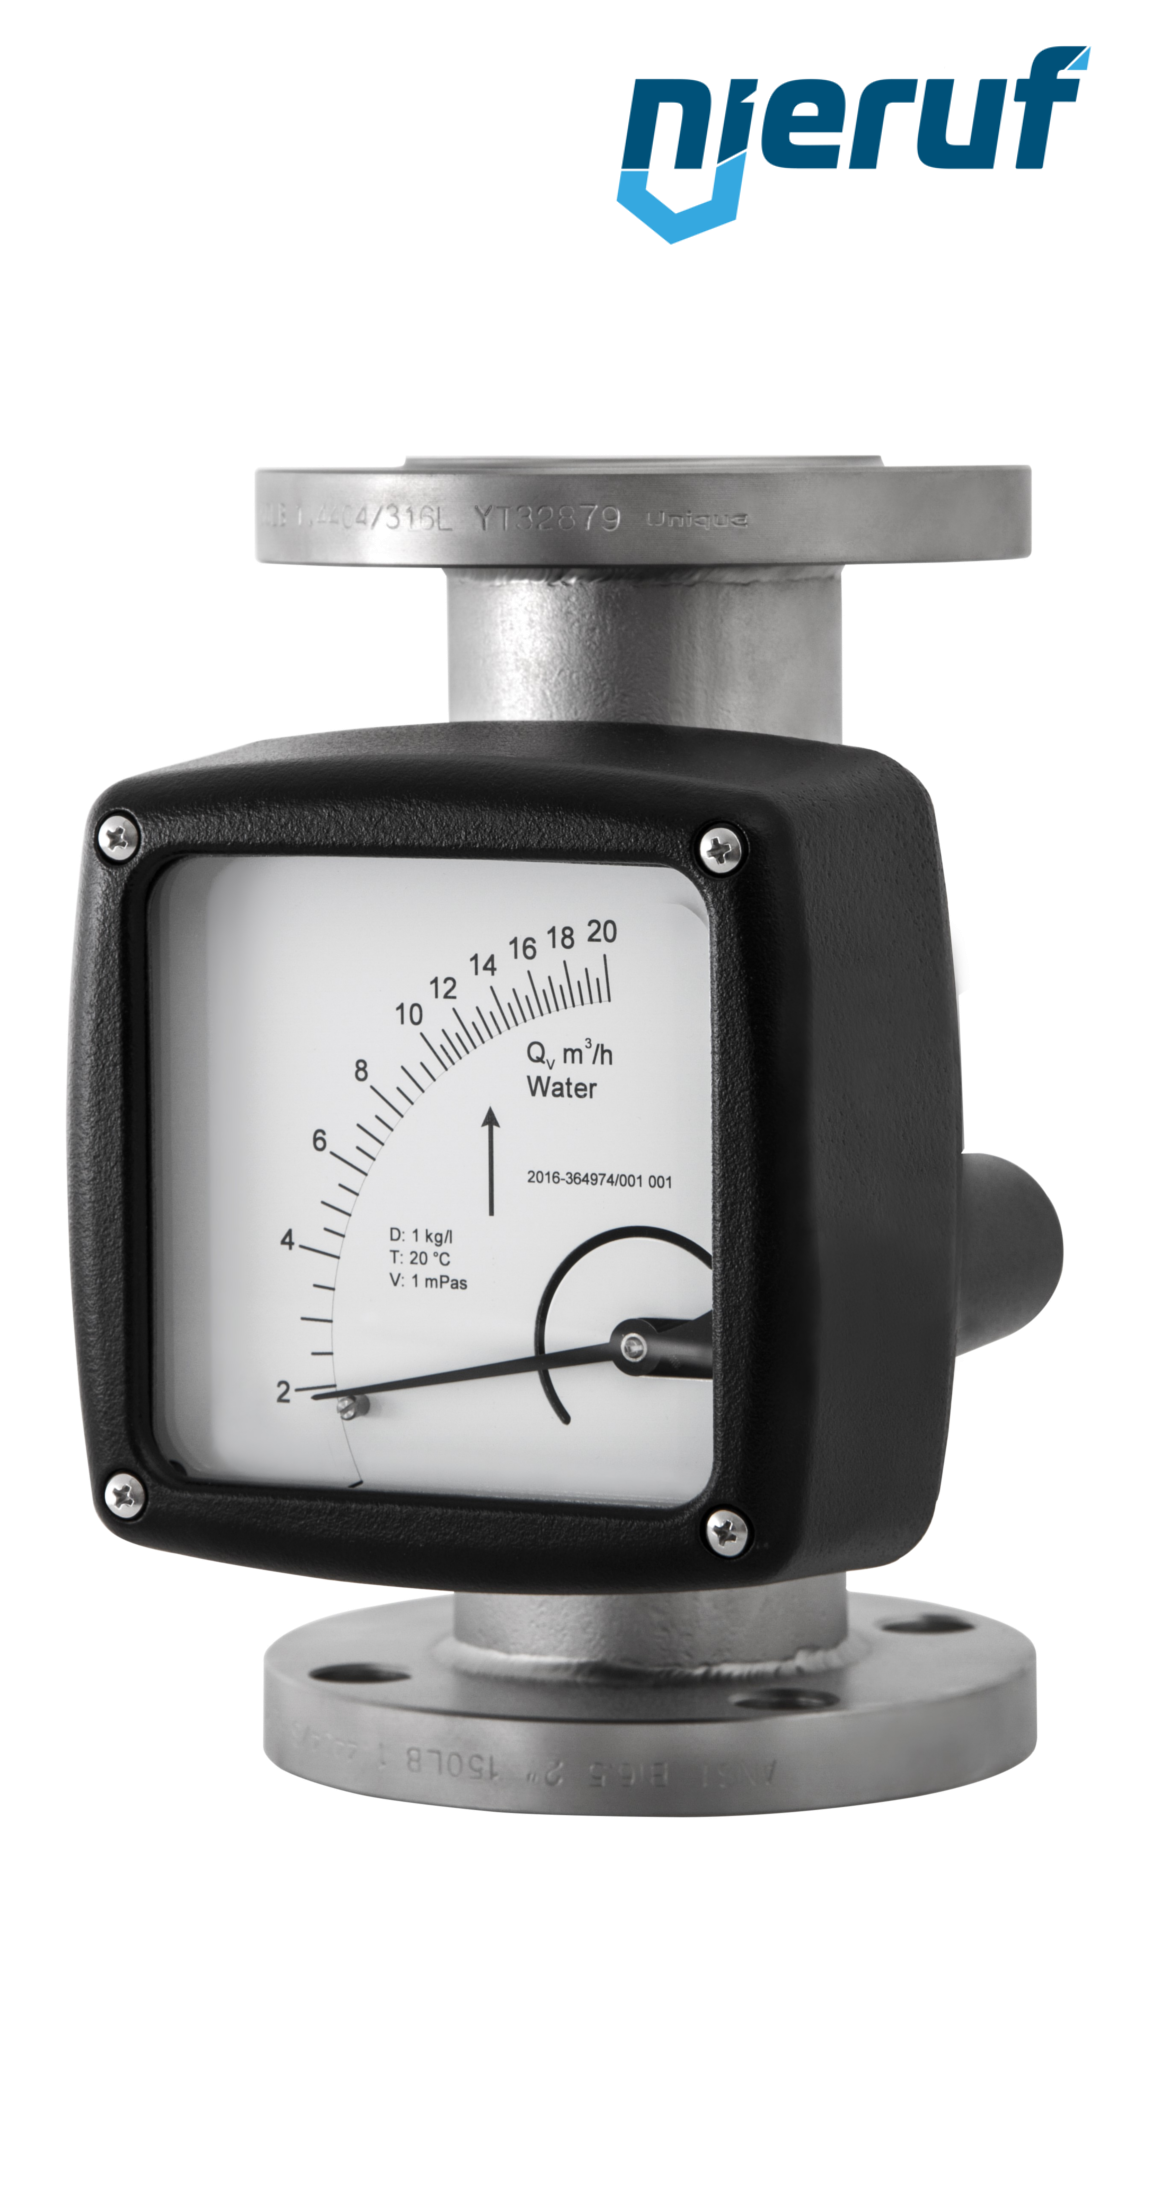 misuratore di flusso / rotametro completamente in metallo DN100-attacco 300,0 - 3000,0 m3/h tubo DN100 aria